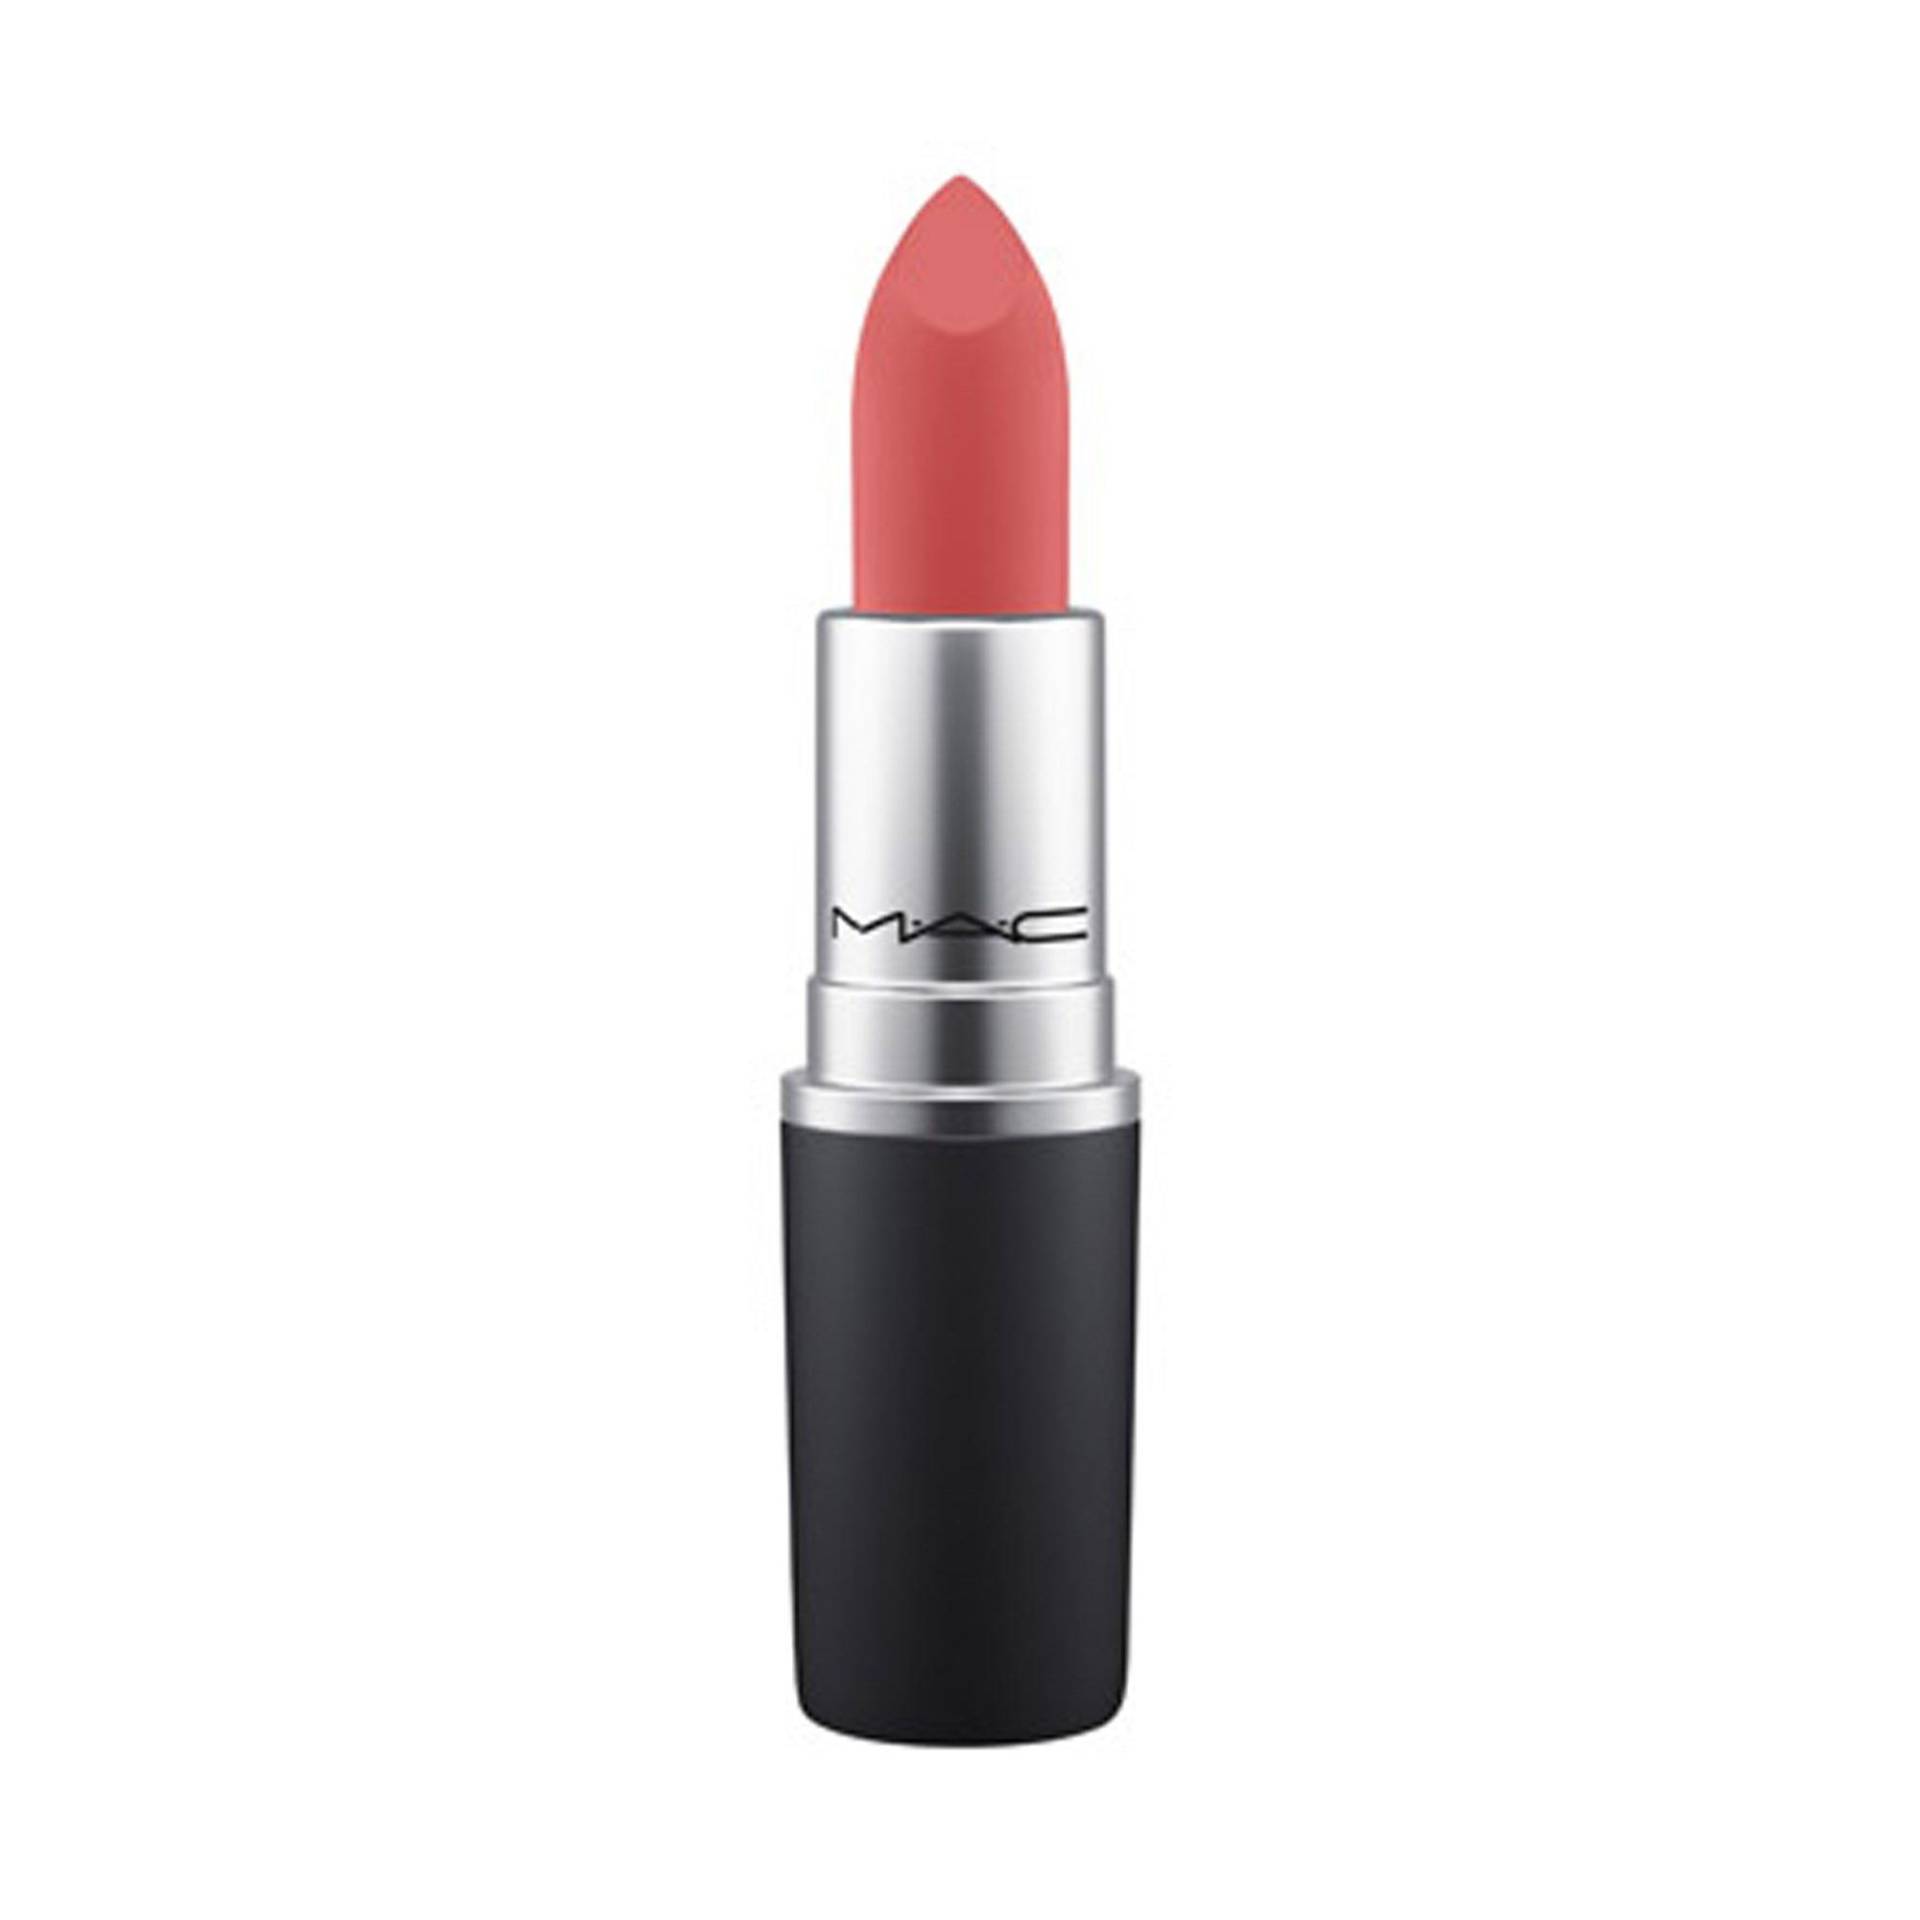 Powder Kiss Lipstick Damen Sheer Outrage von MAC Cosmetics